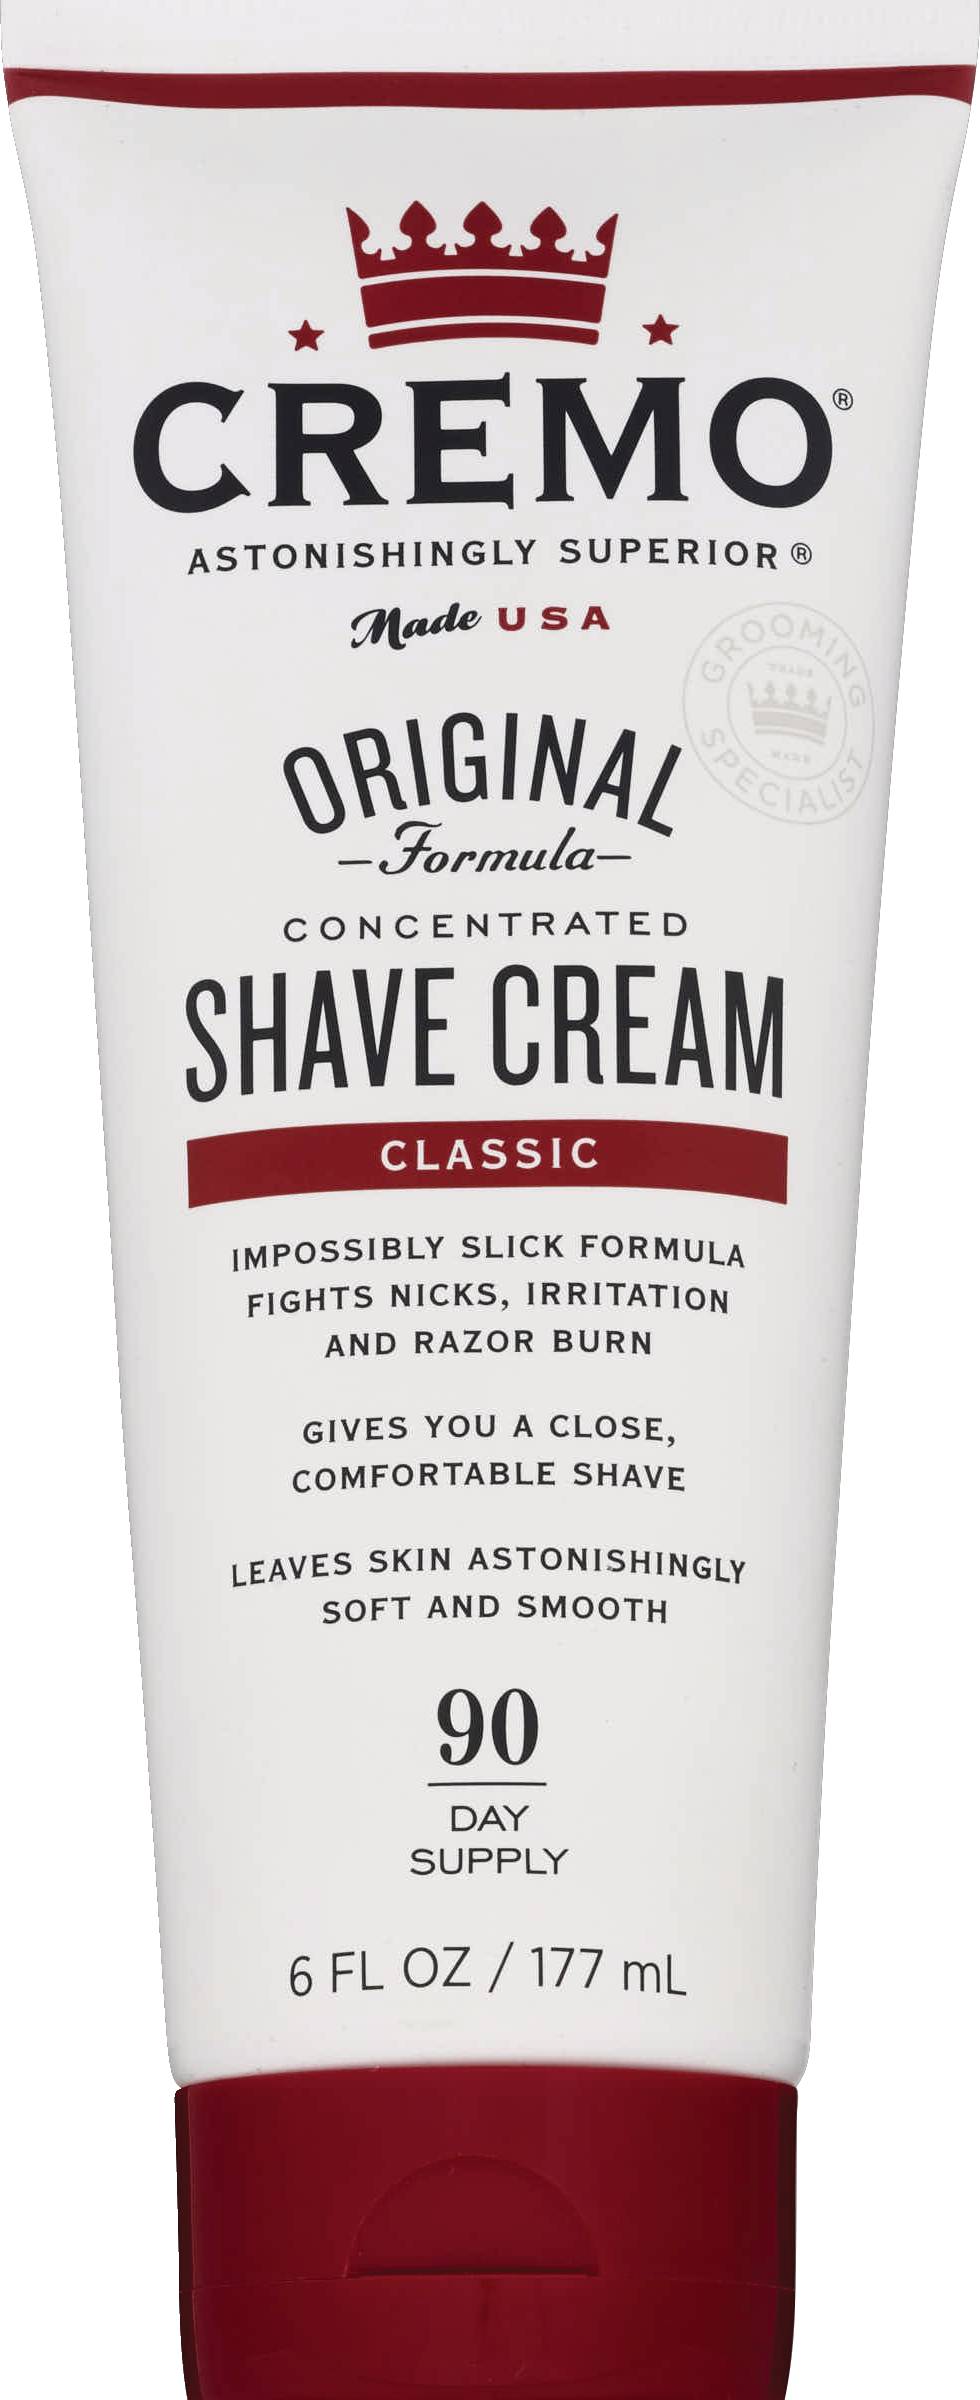 Cremo Original Shave Cream, Classic, 6 OZ